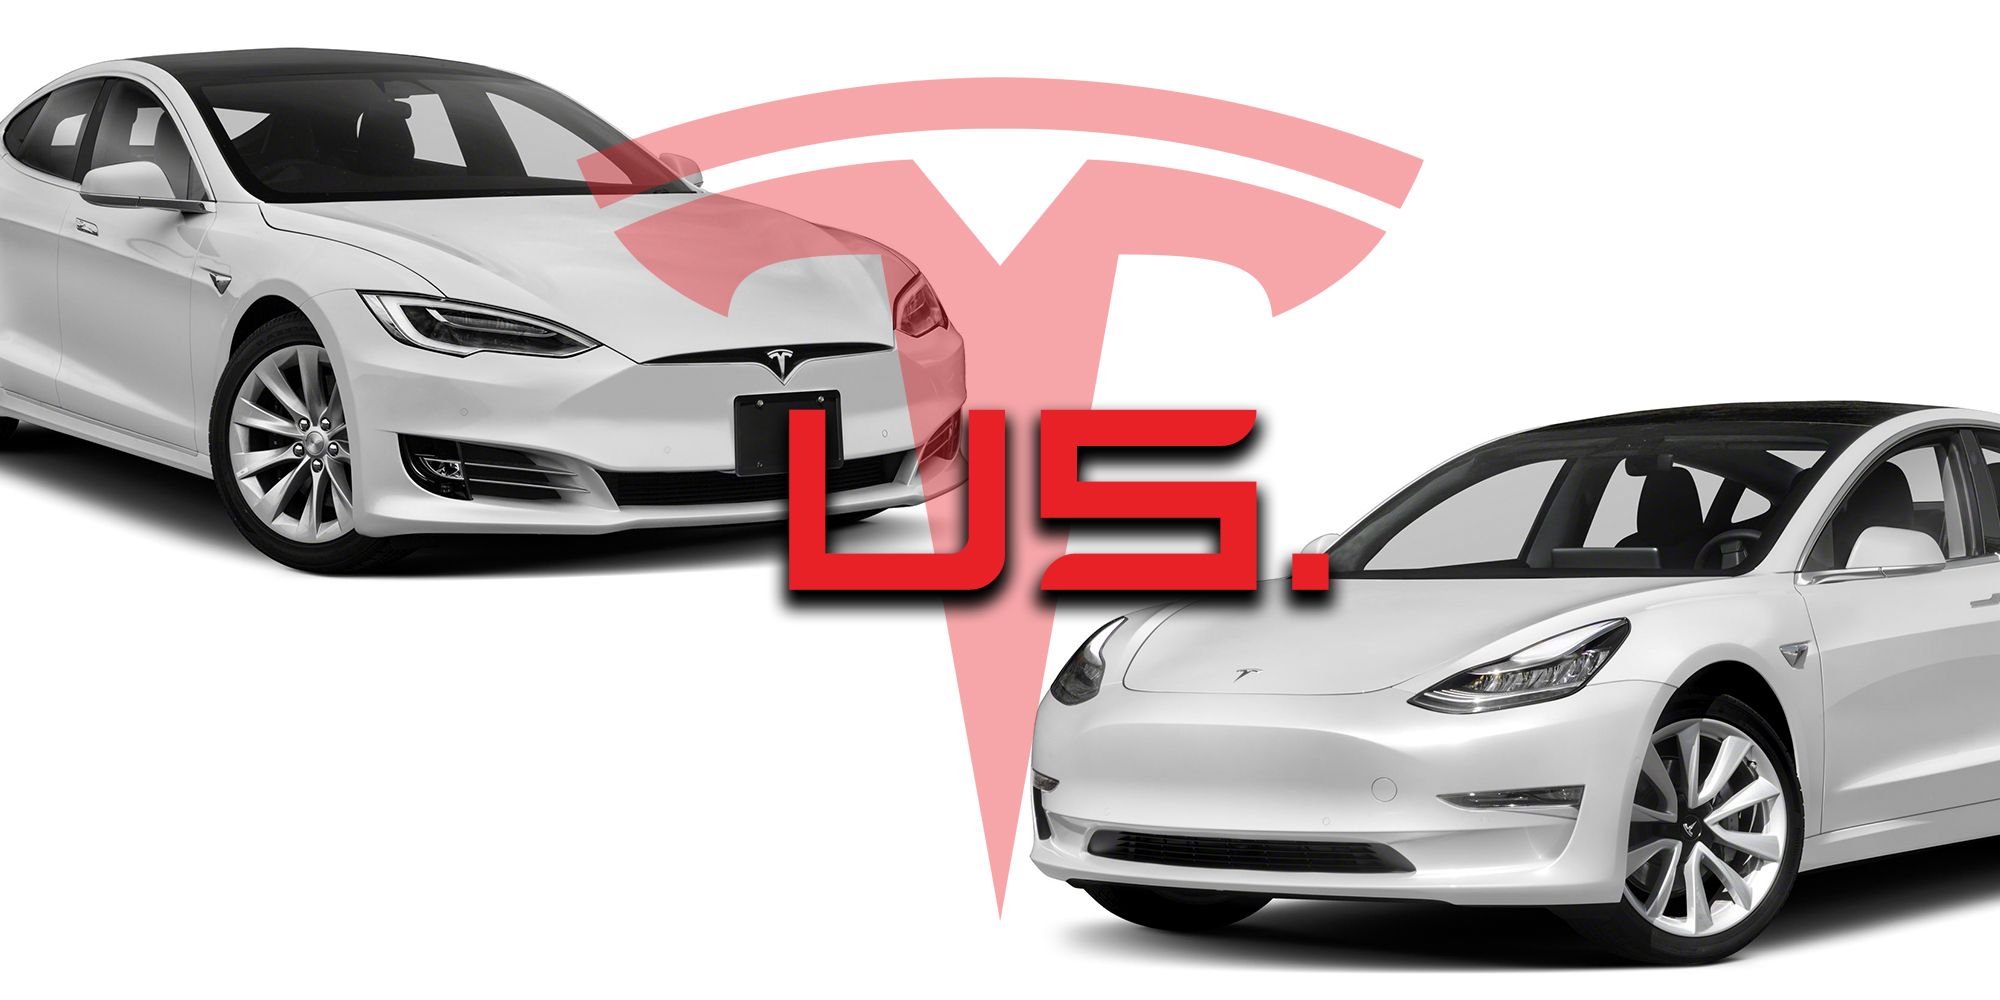 Tesla sedan comparison